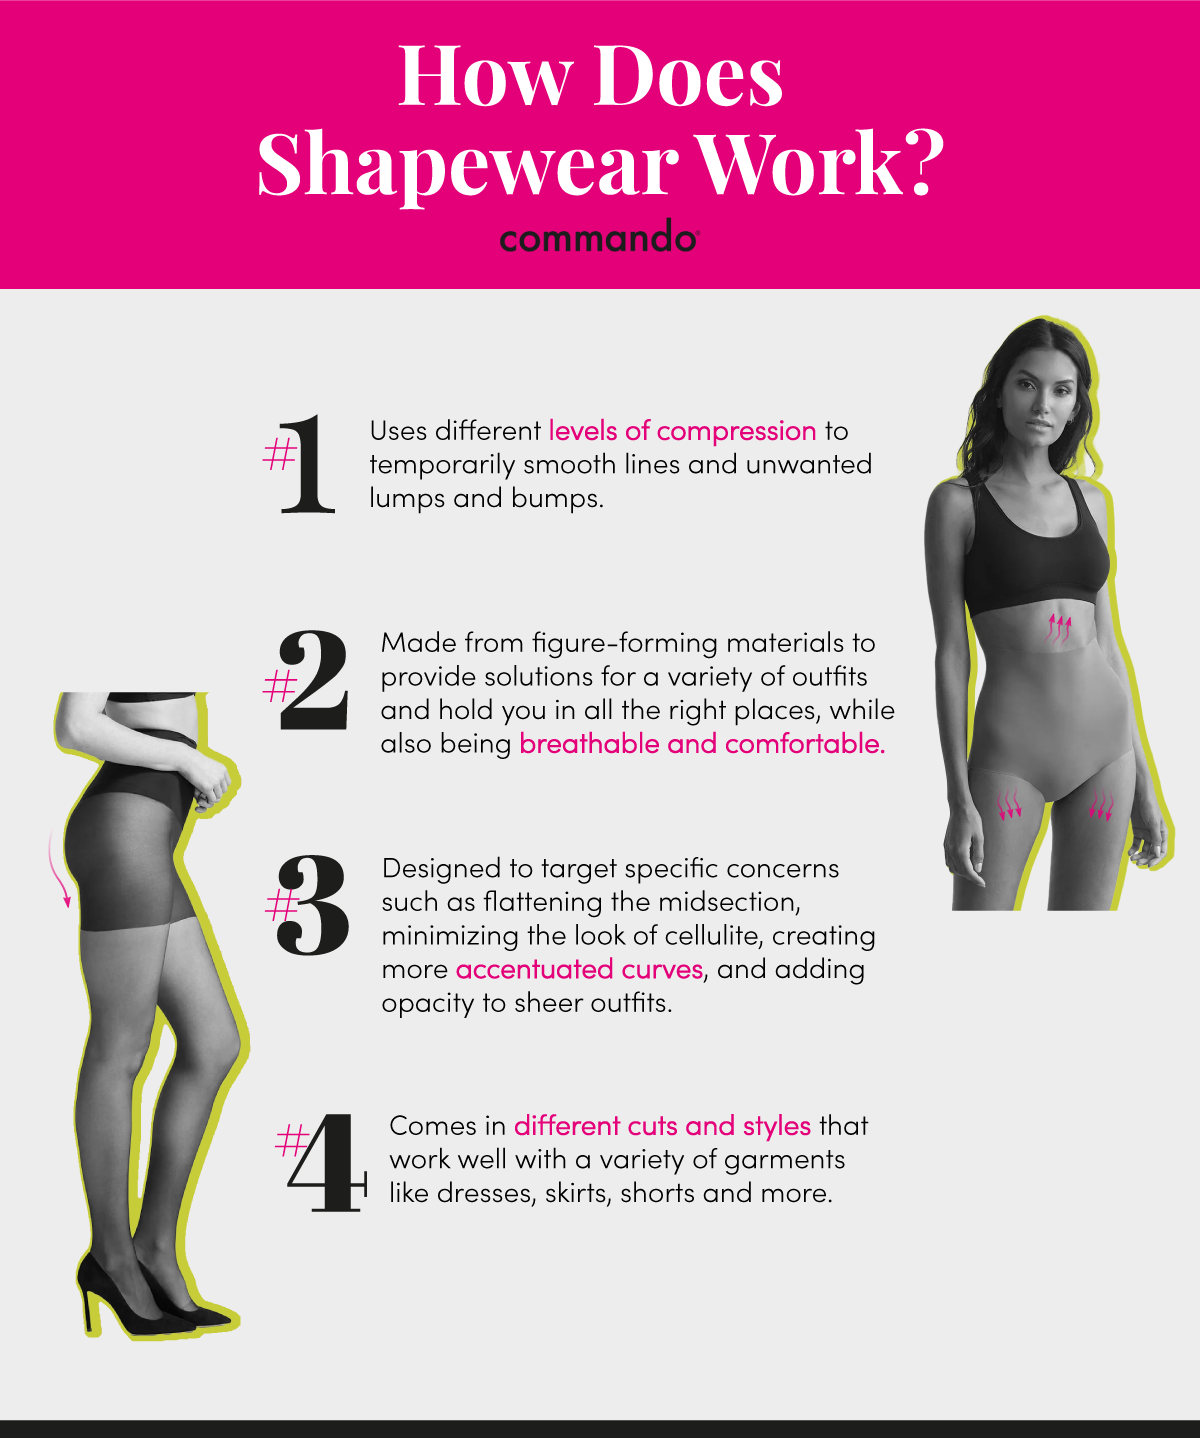 What Is Shapewear?